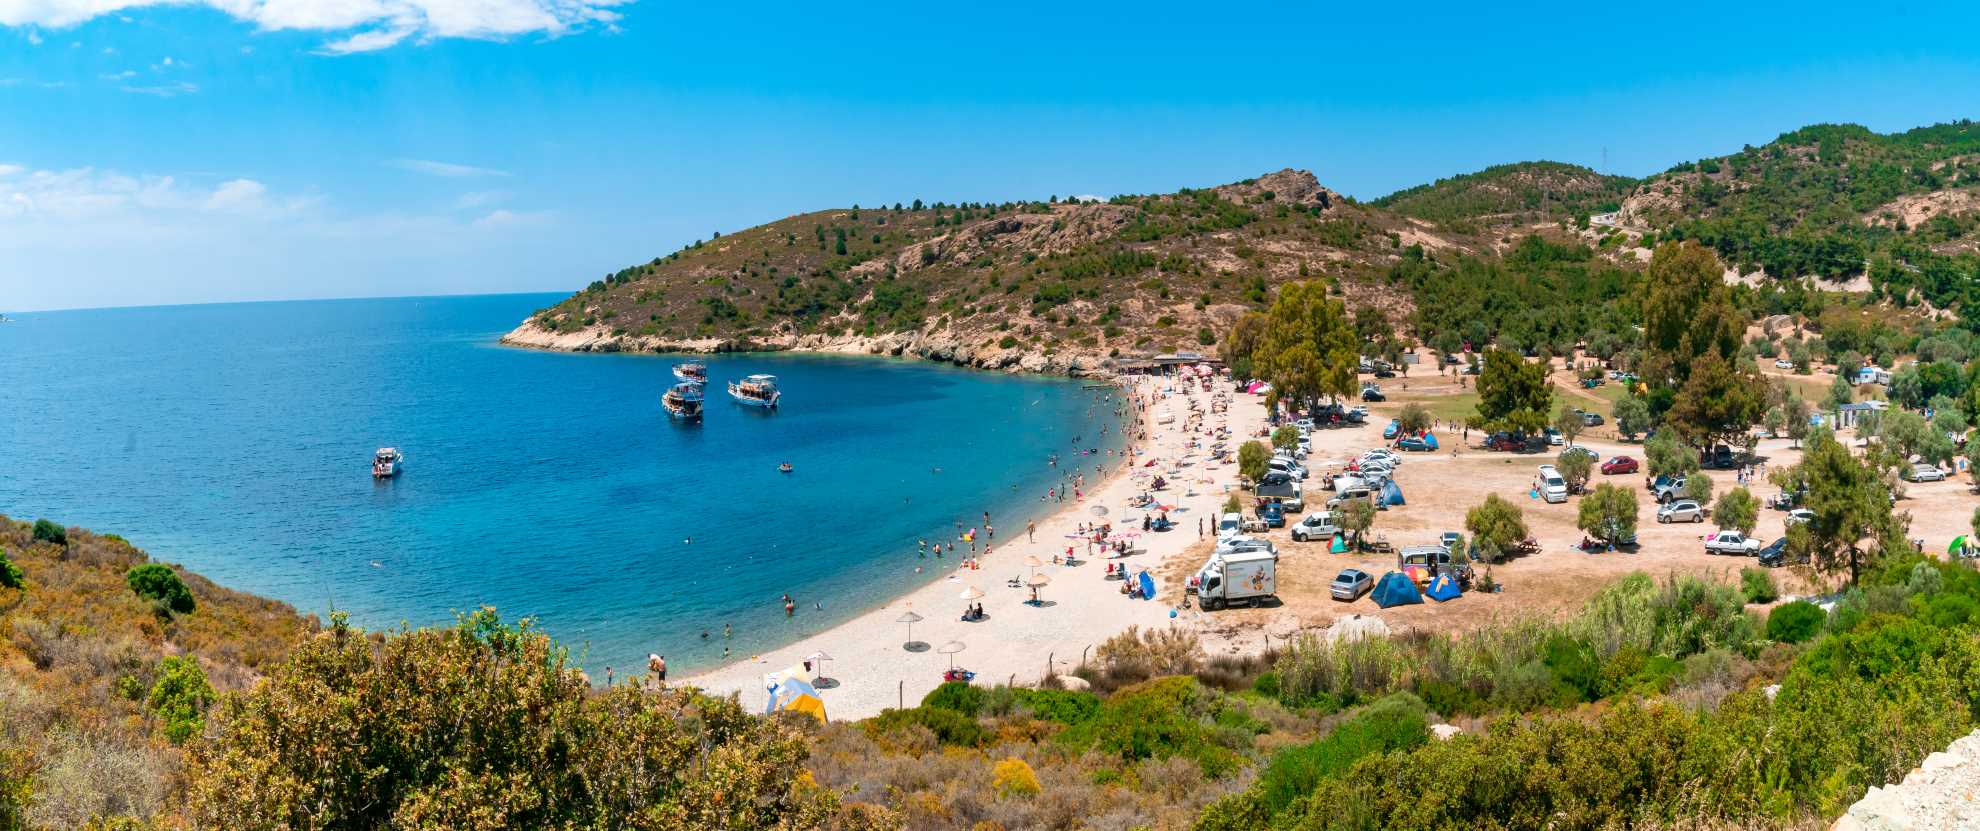 Campeggio sulla spiaggia di Phocaea, Golfo di İzmir, Turchia - Campeggi in Turchia